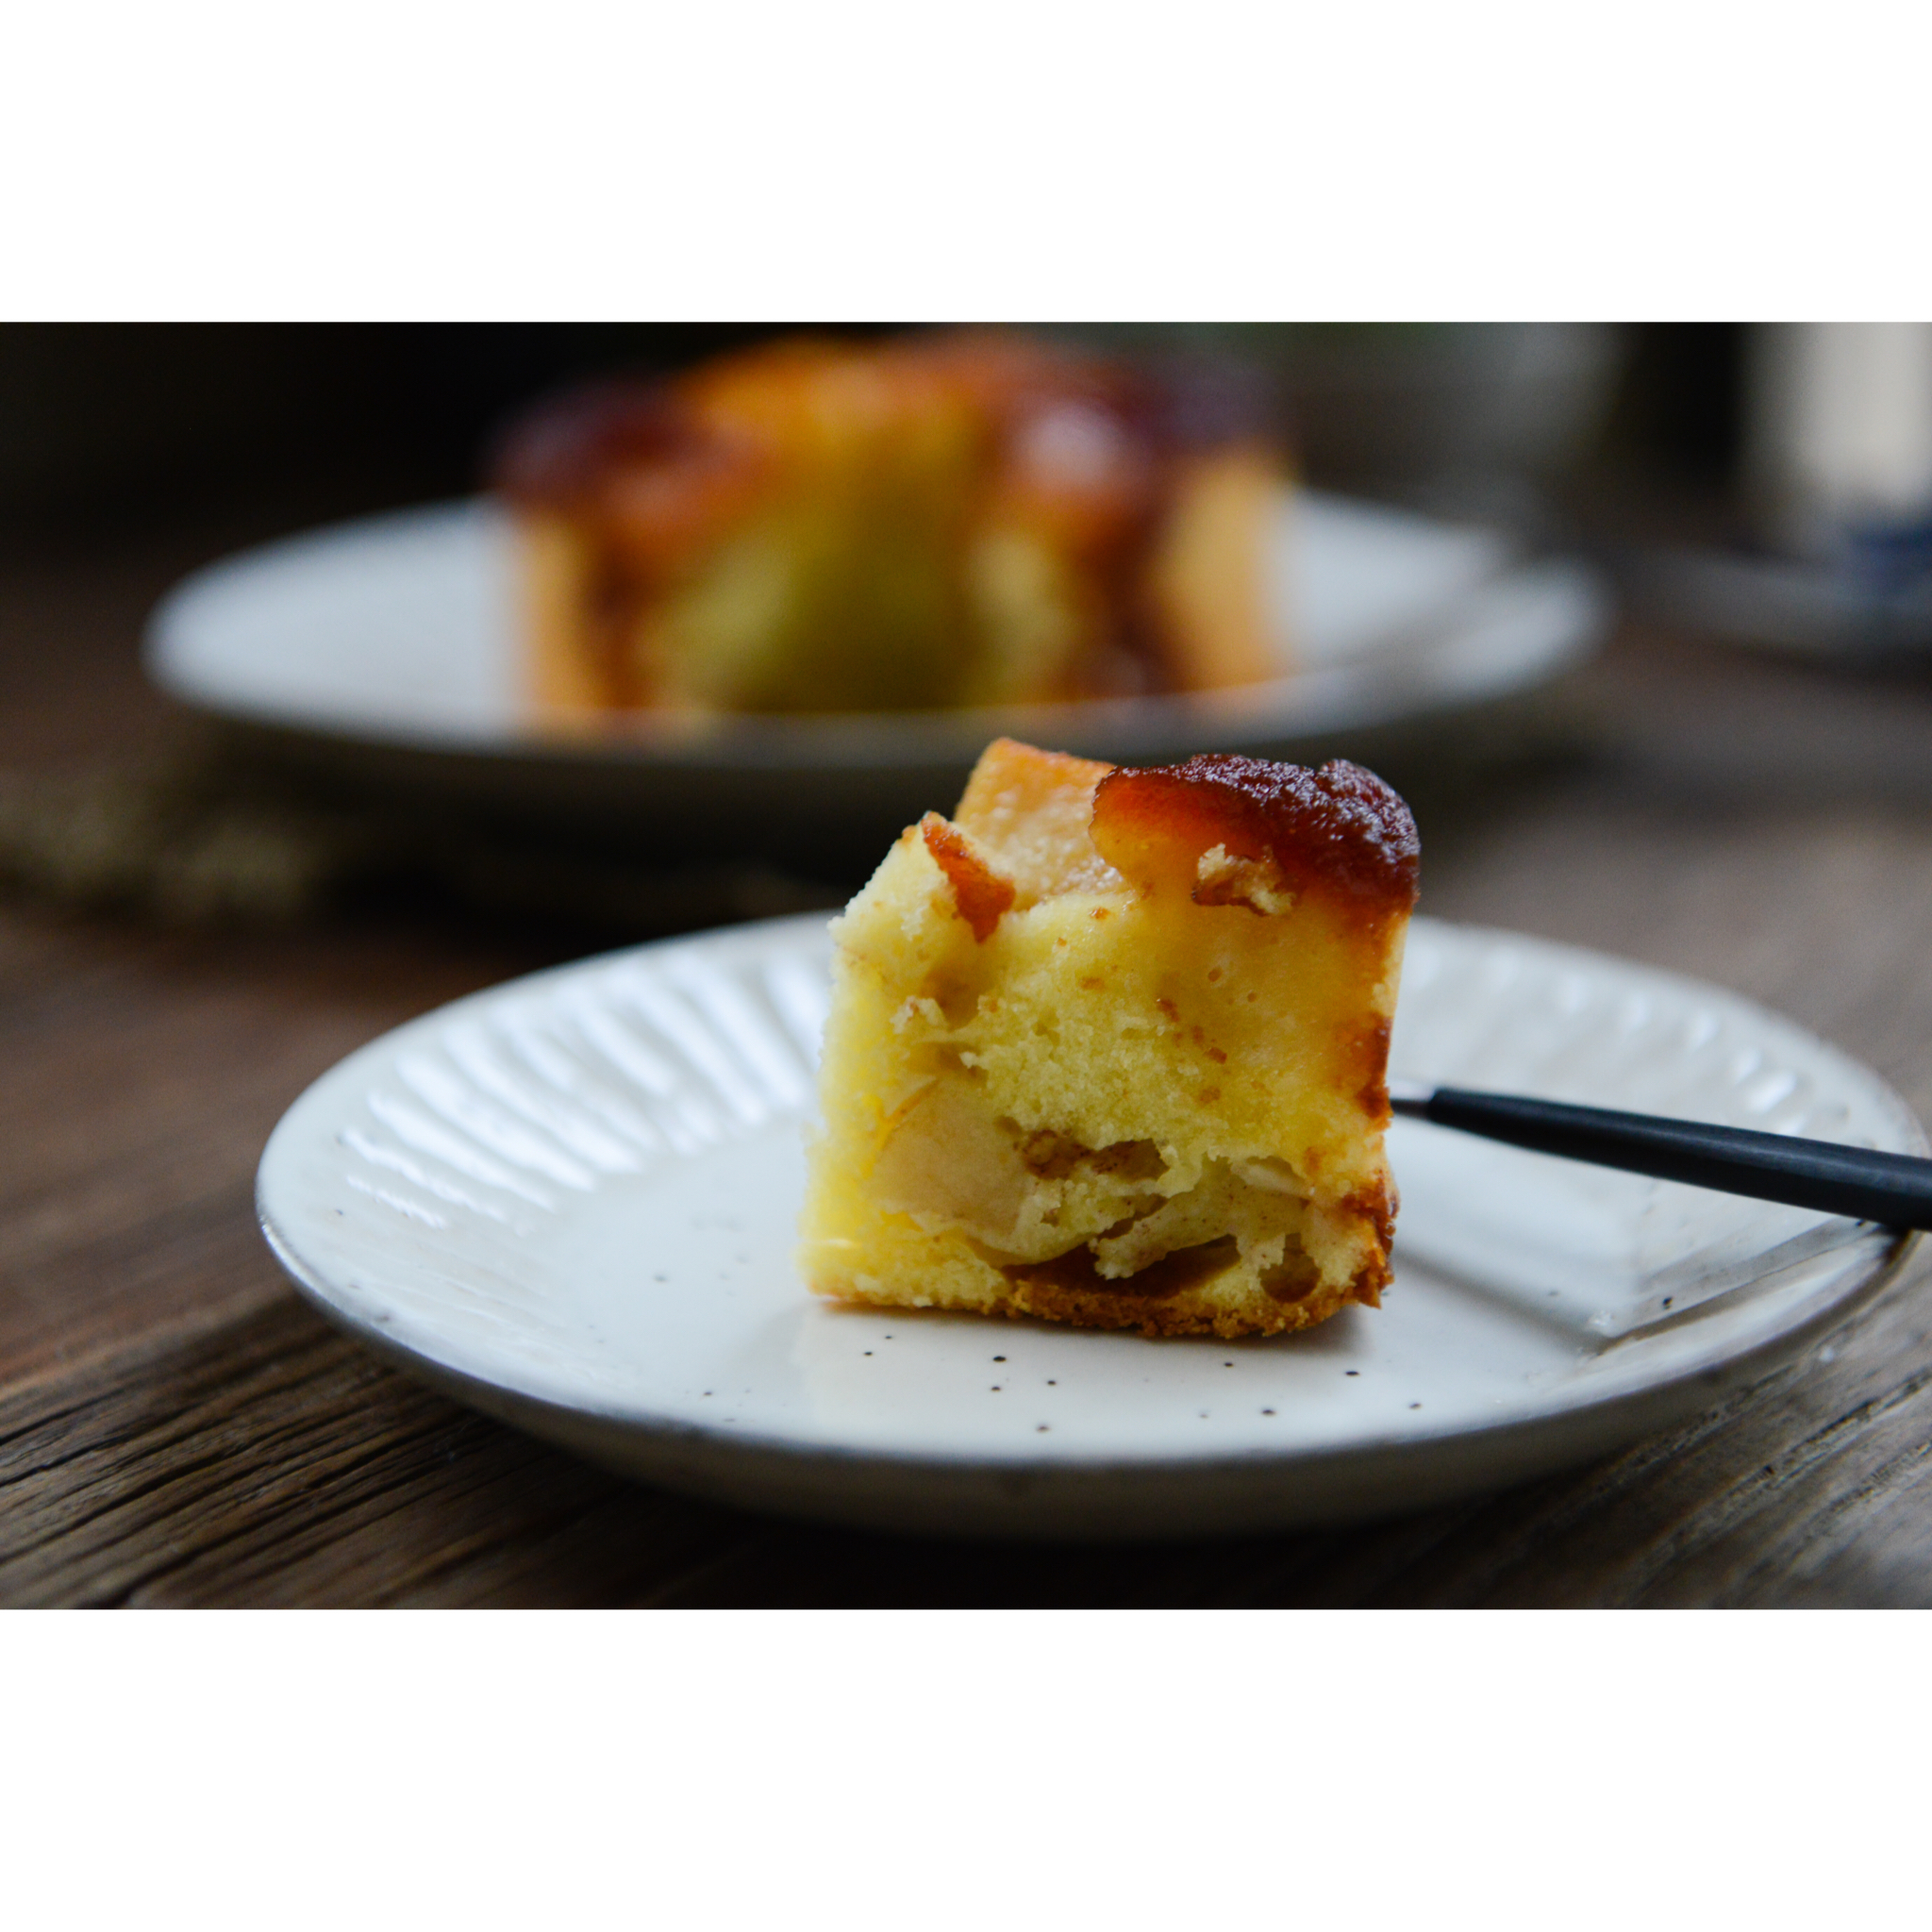 《小岛老师的戚风蛋糕&经典蛋糕》—— 焦糖苹果蛋糕